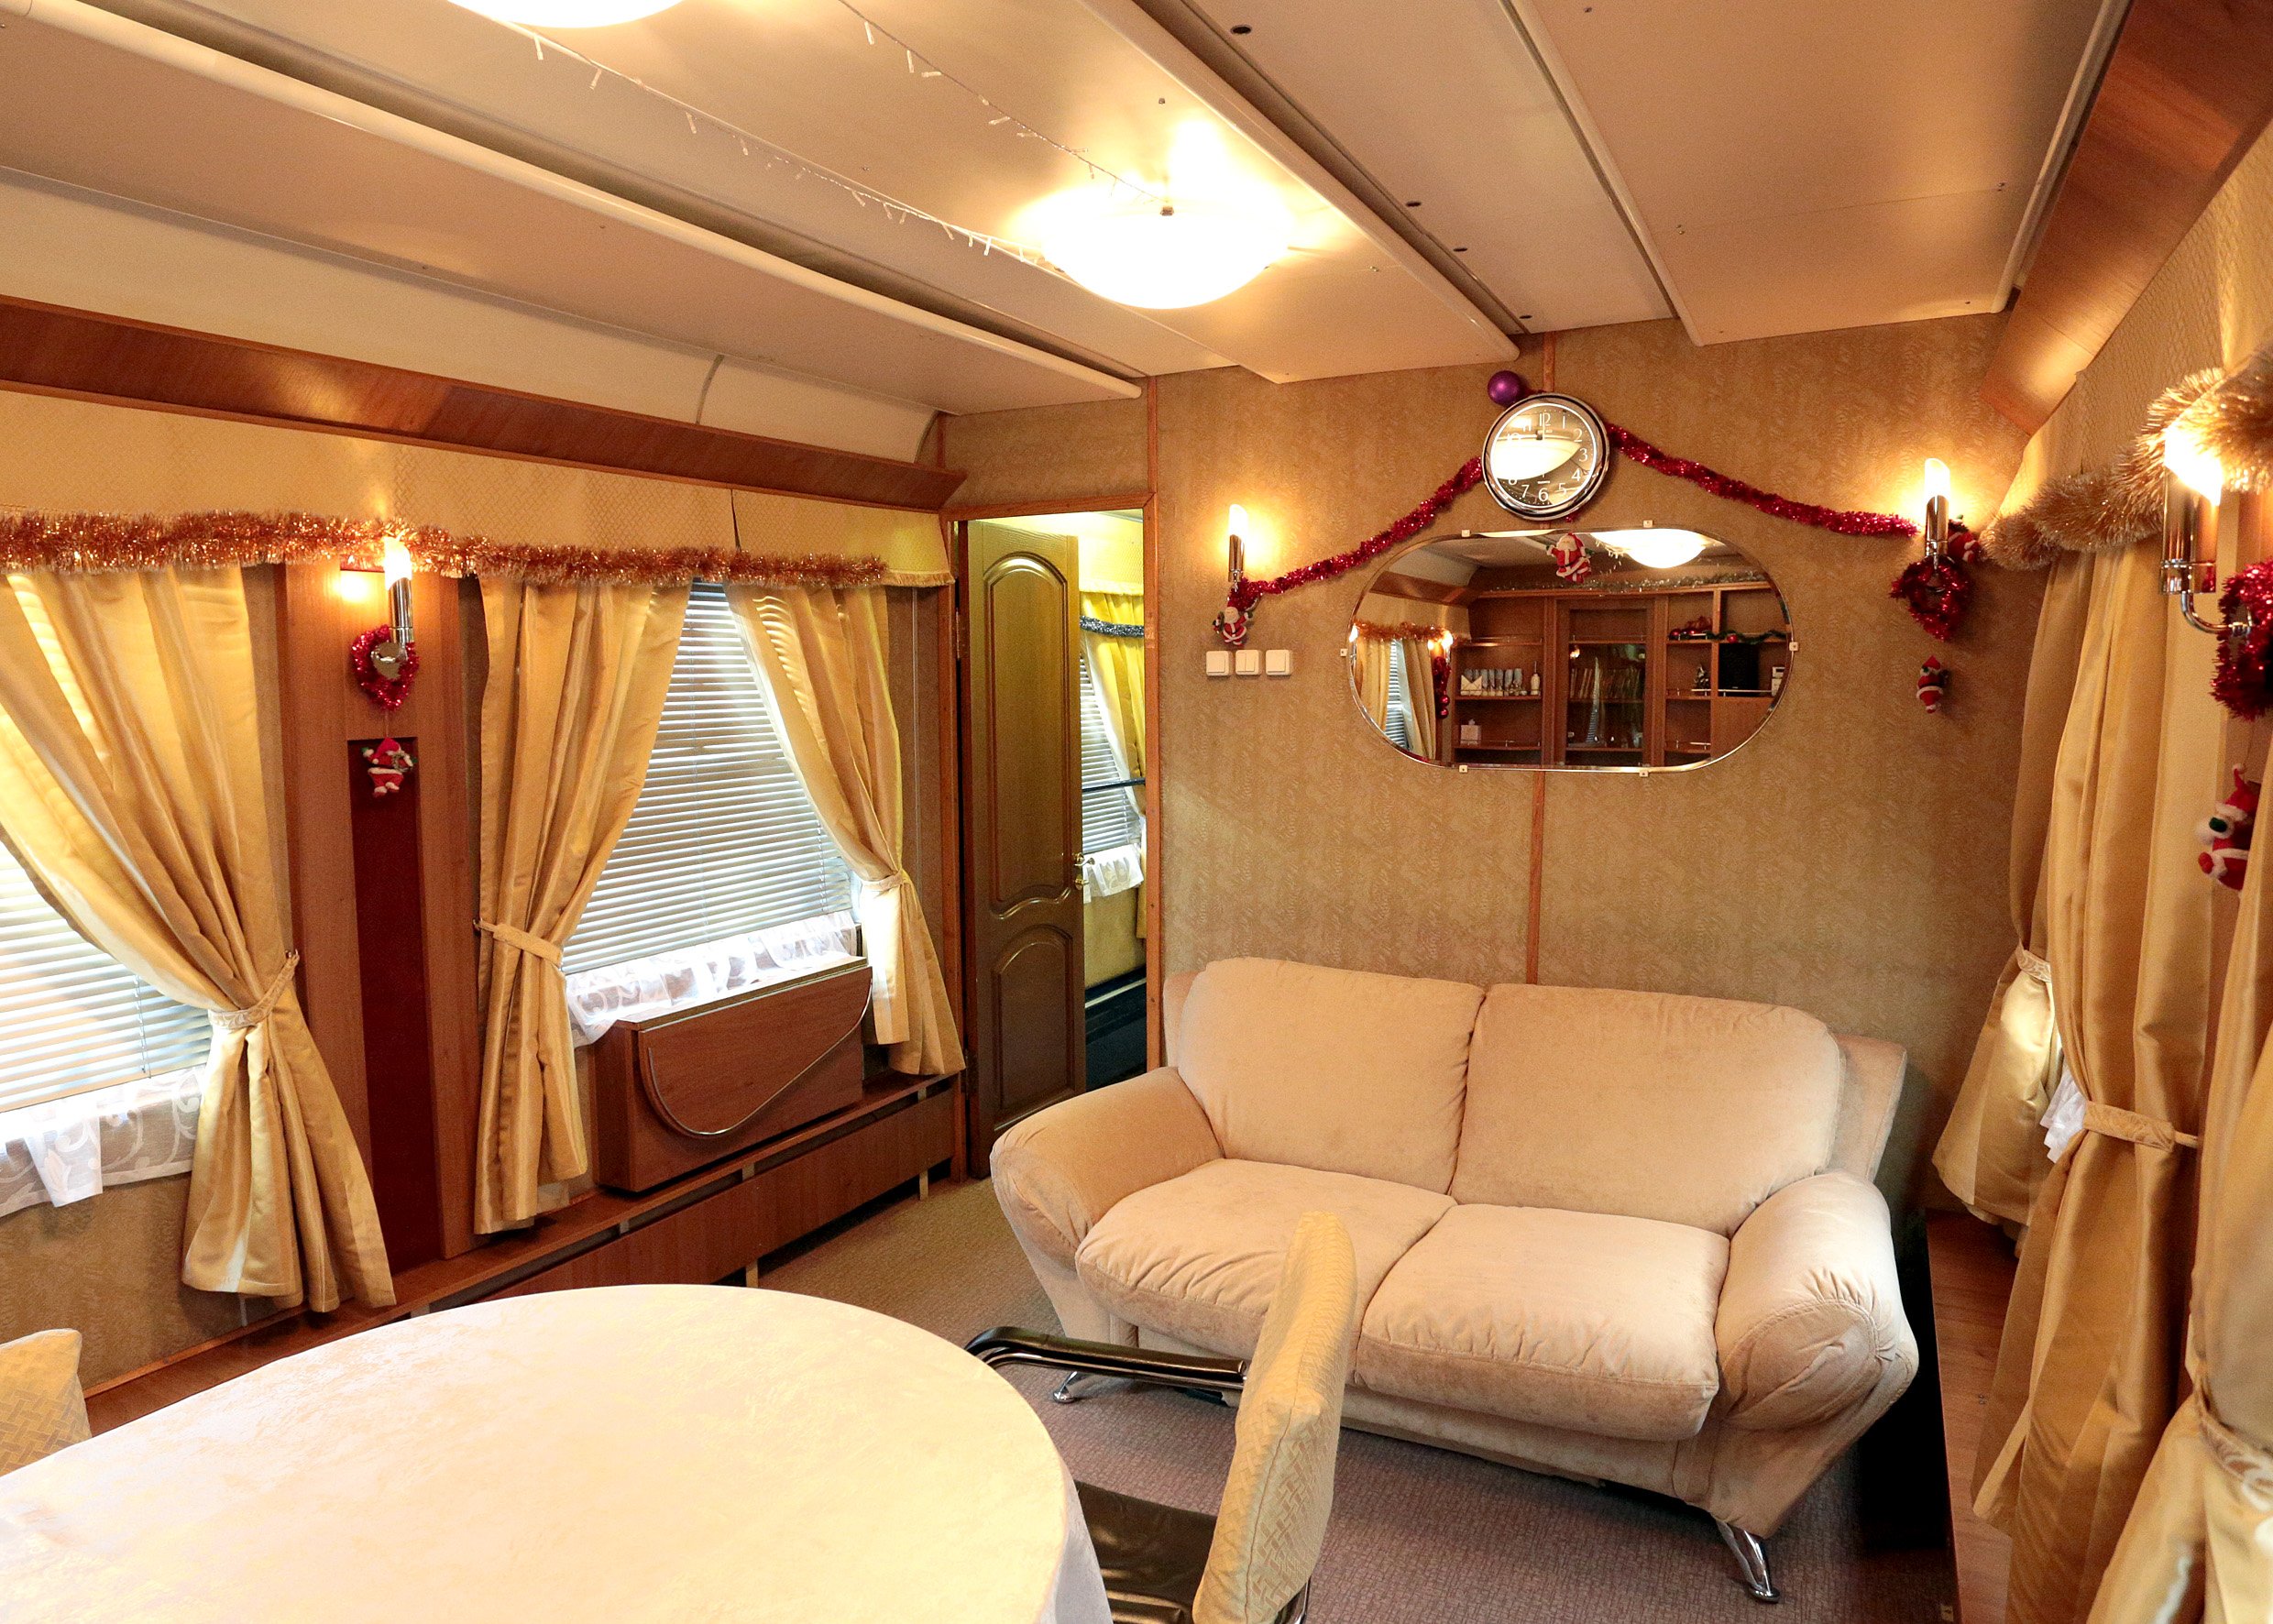 спальня в стиле купе поезда